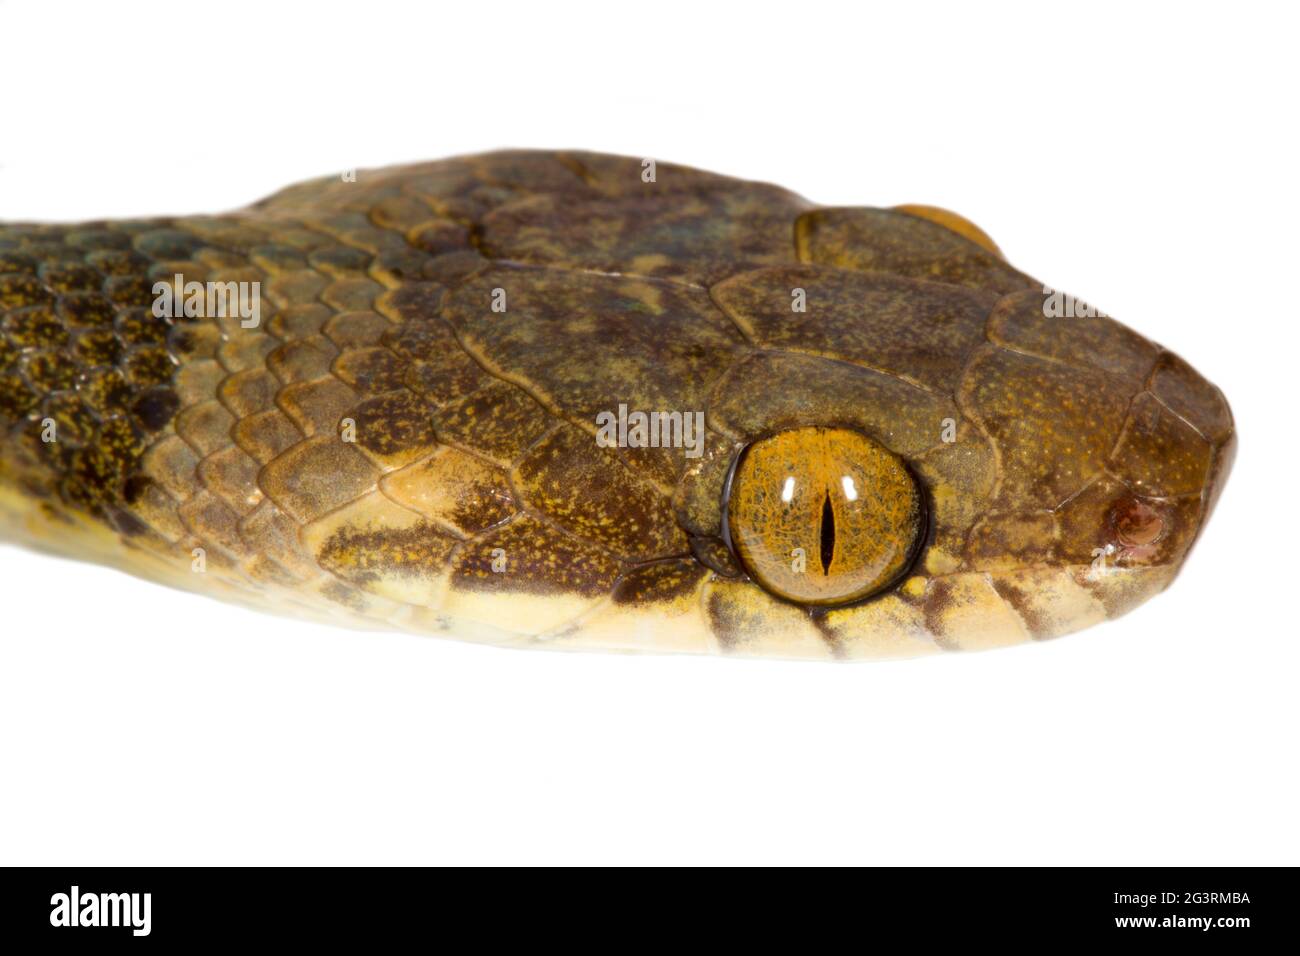 Katze-eyed Snake (Leptodeira Septentrionalis) aus der biologischen Choco-Region im Nordwesten Ecuadors. Stockfoto